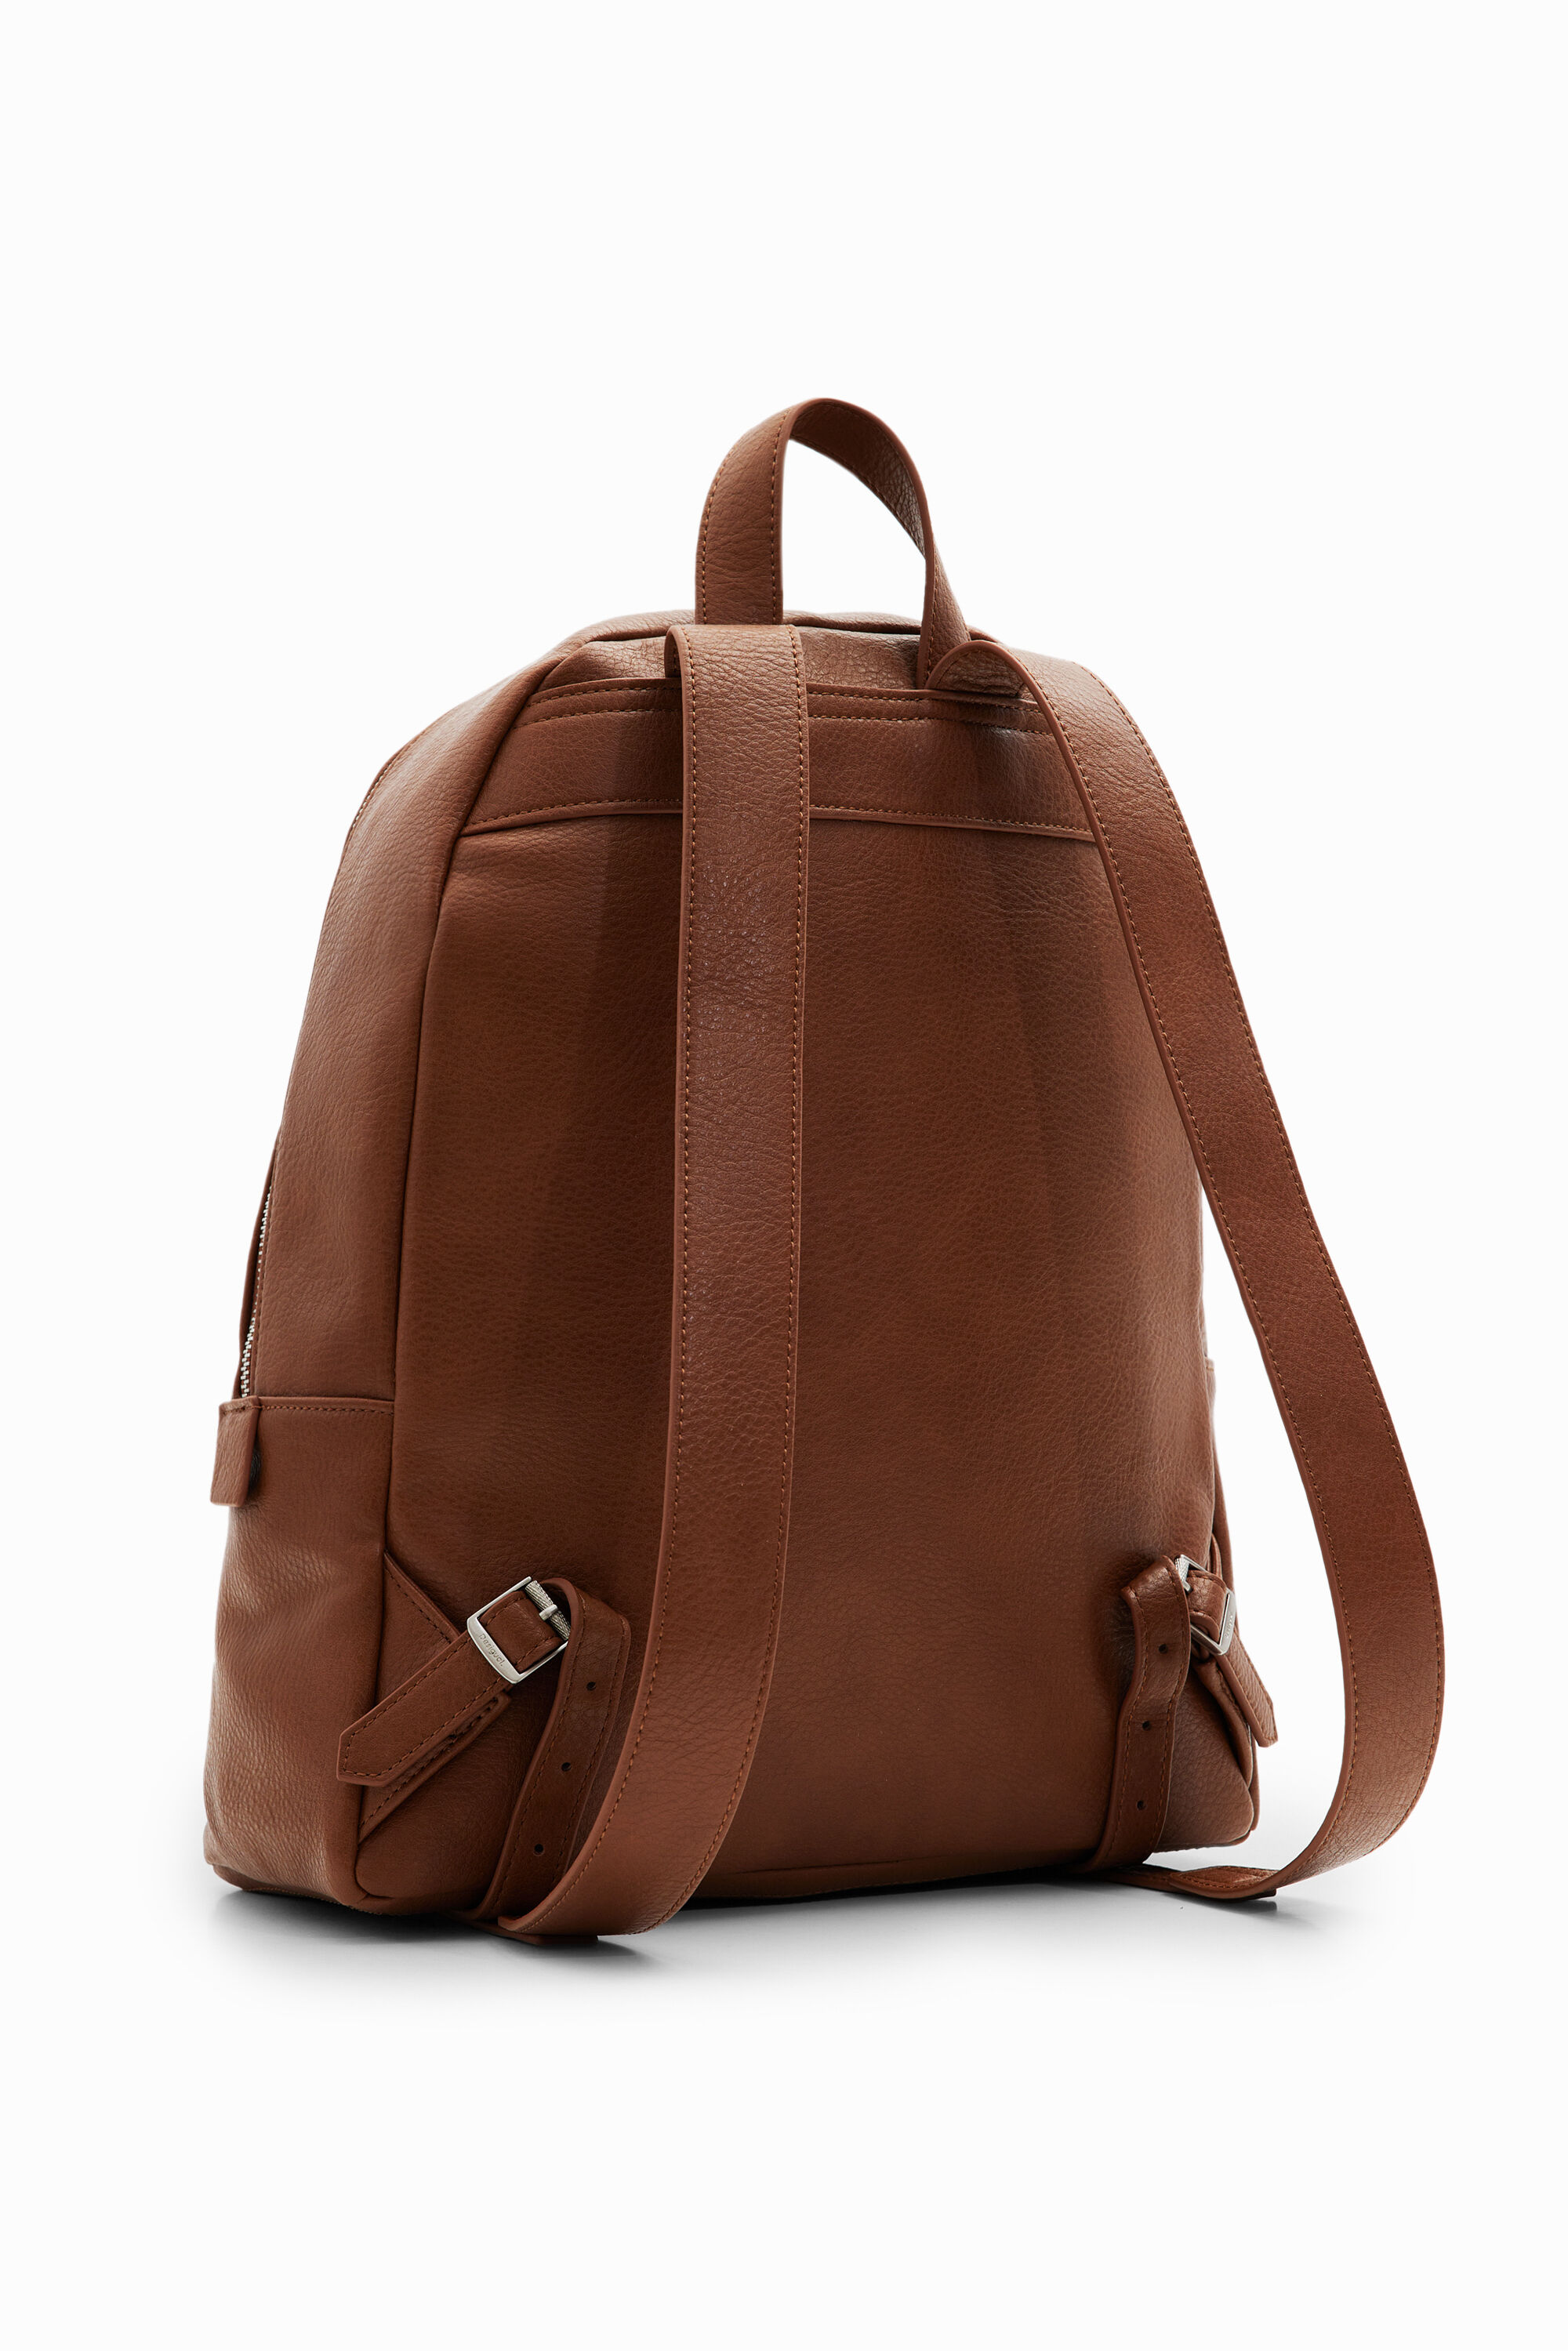 Shop Desigual L Pockets Backpack In Brown